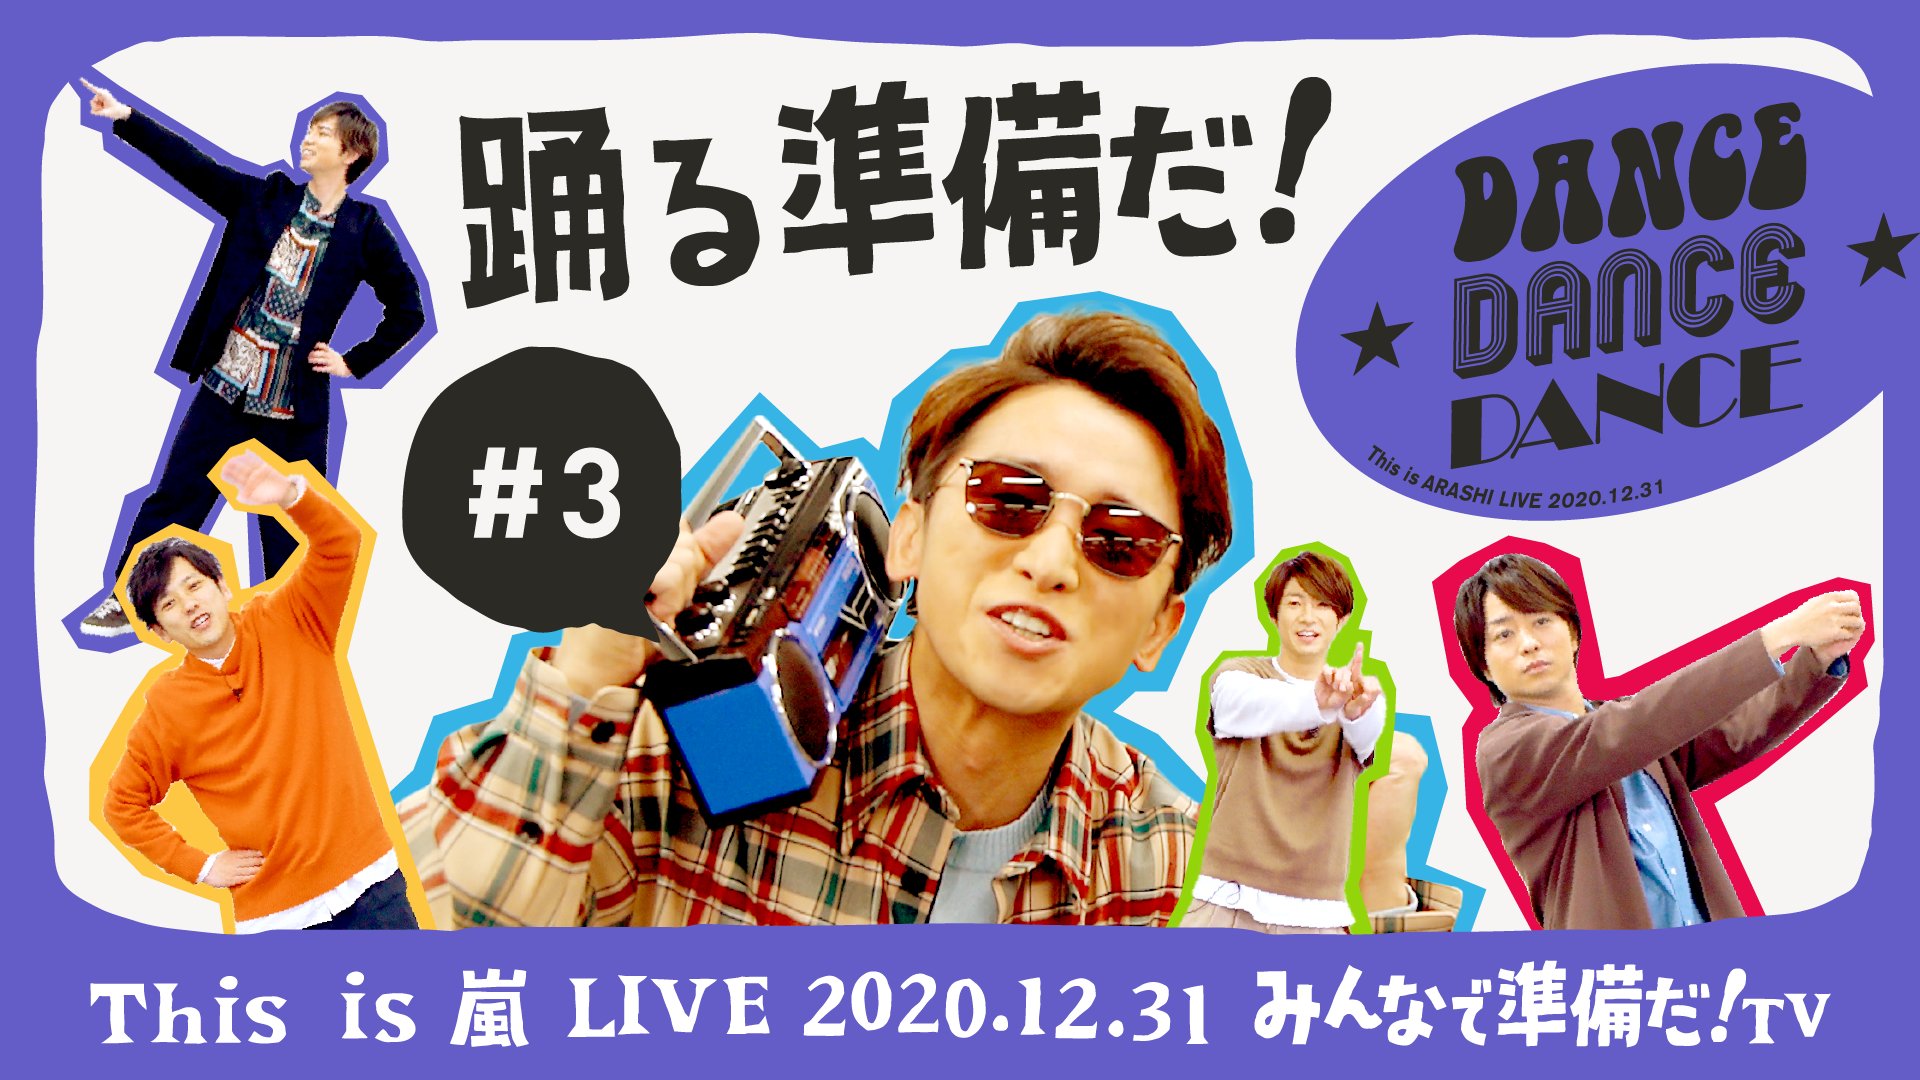 【新品未使用】This is 嵐 ARASHI LIVE 2020【パーカー】